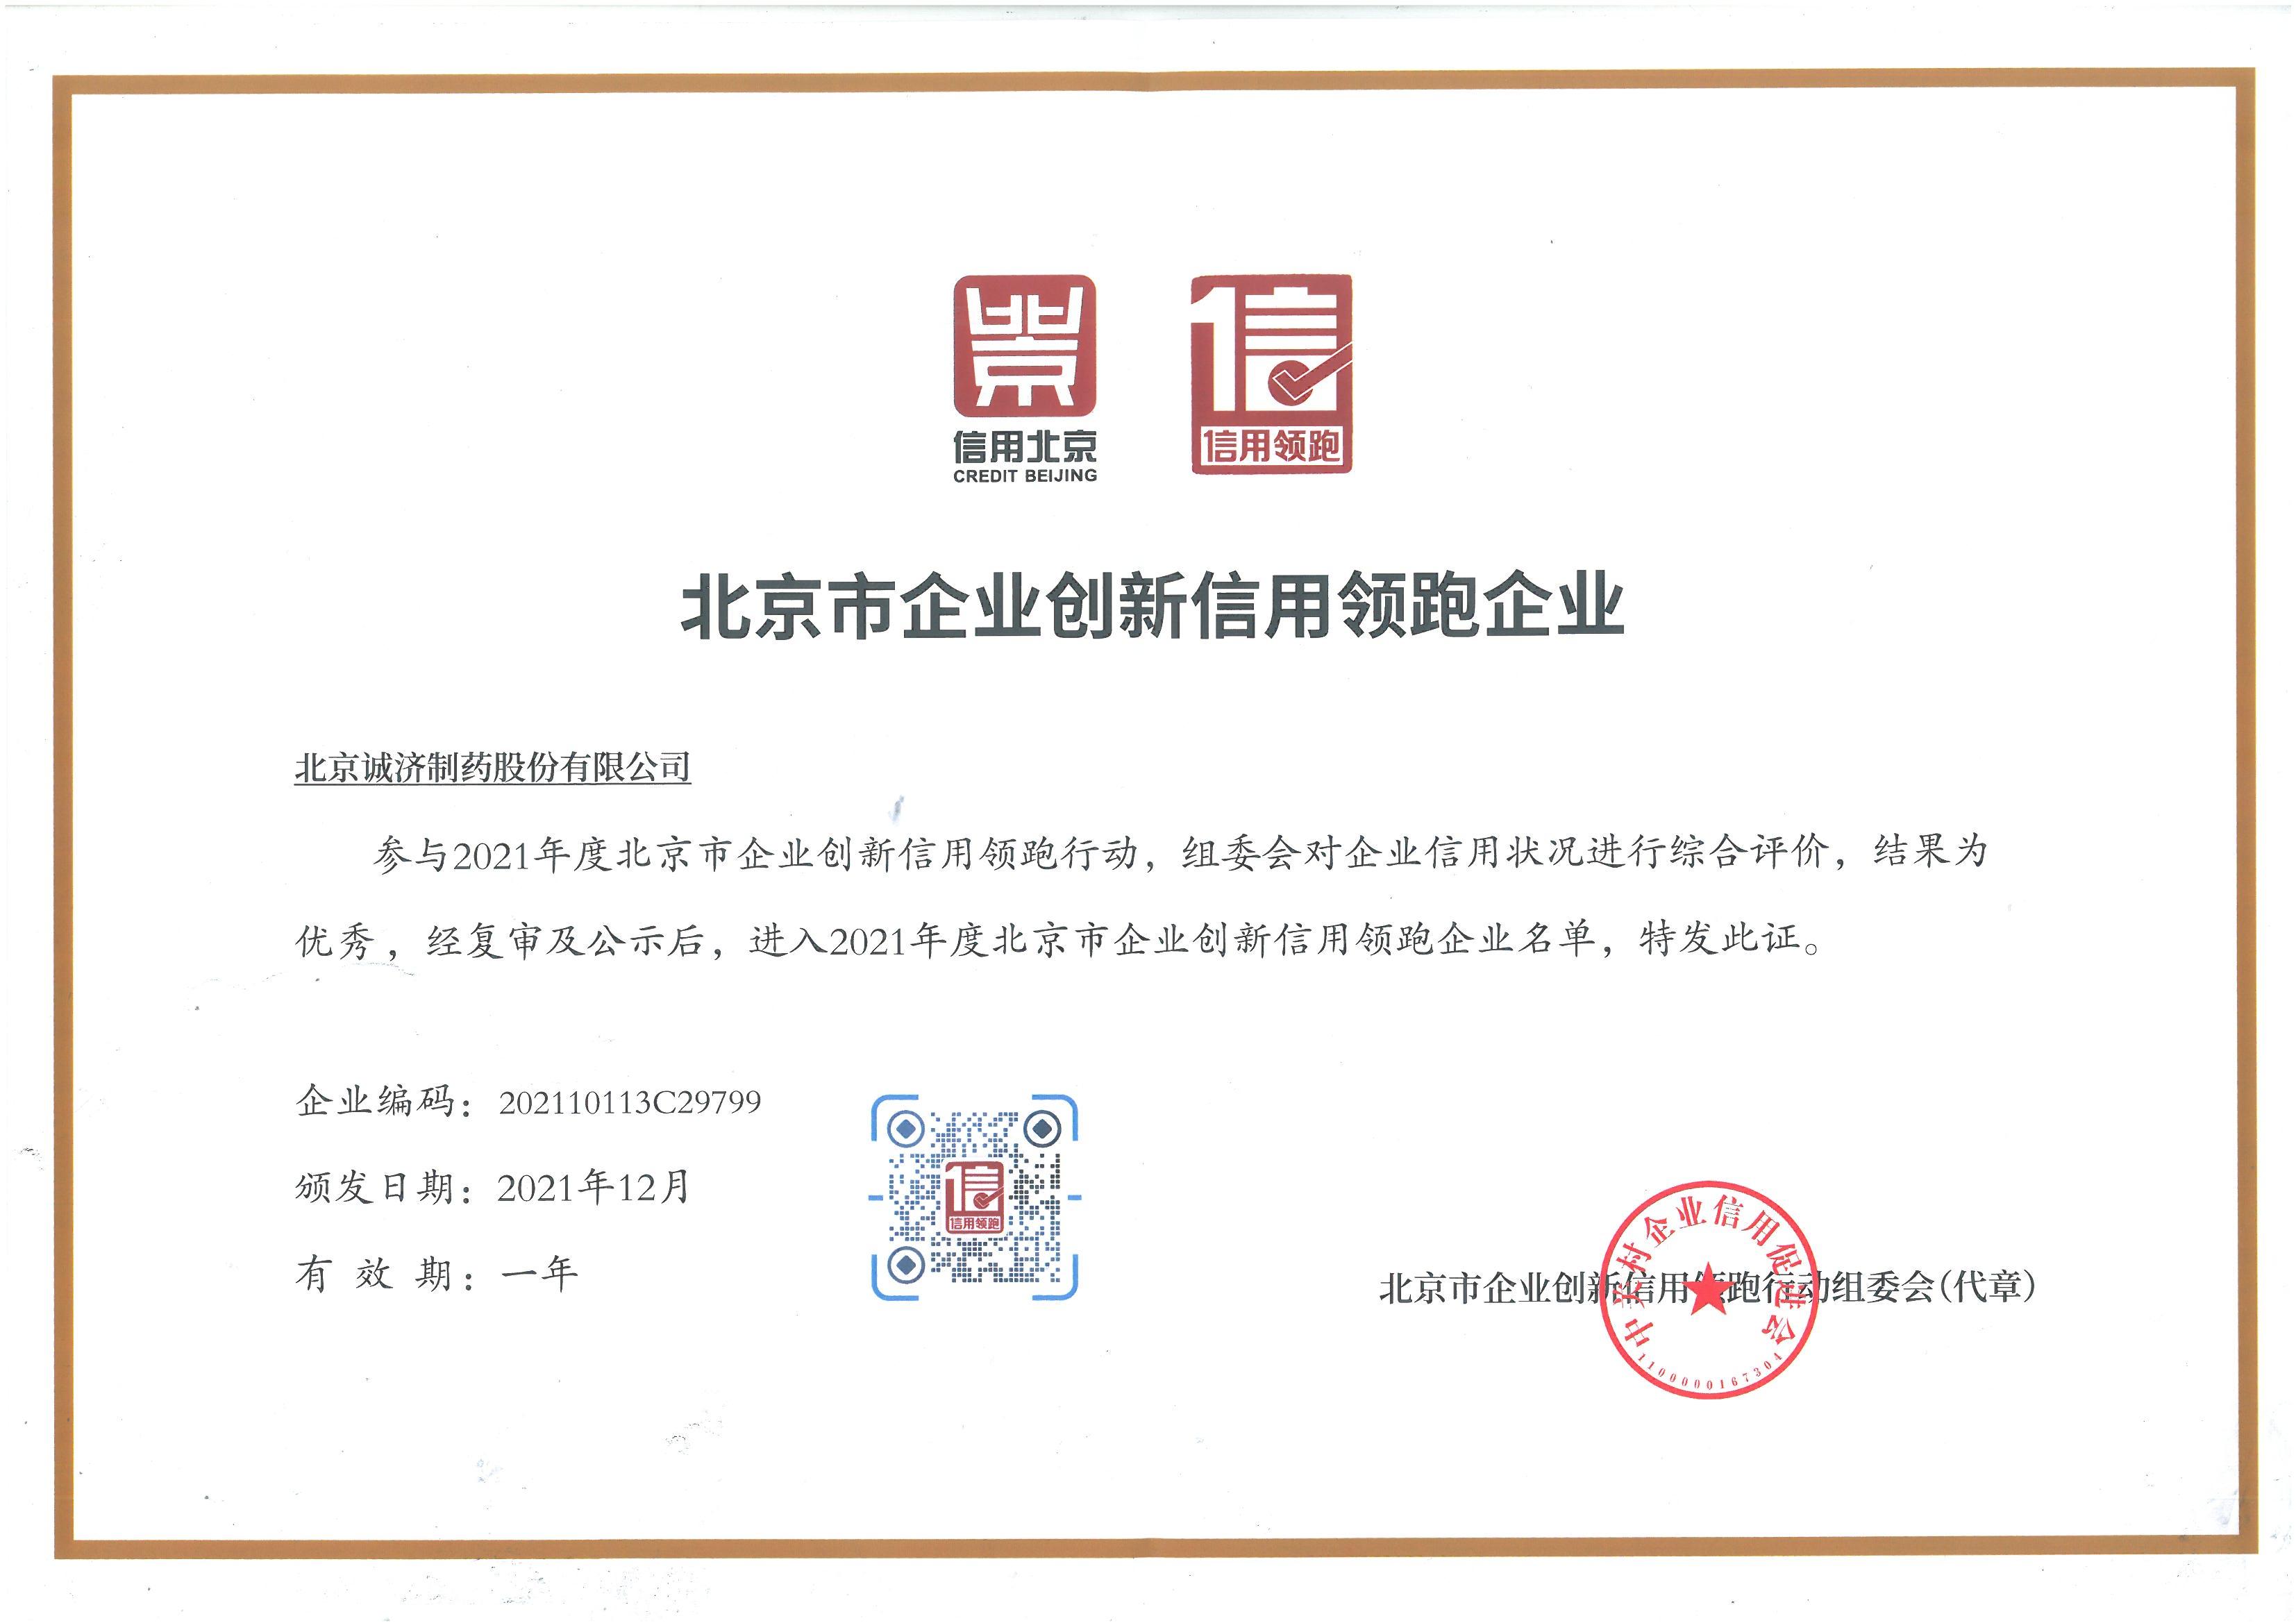 热烈庆祝诚济制药获得“2021年度北京市企业创新信用领跑行动”系列证书